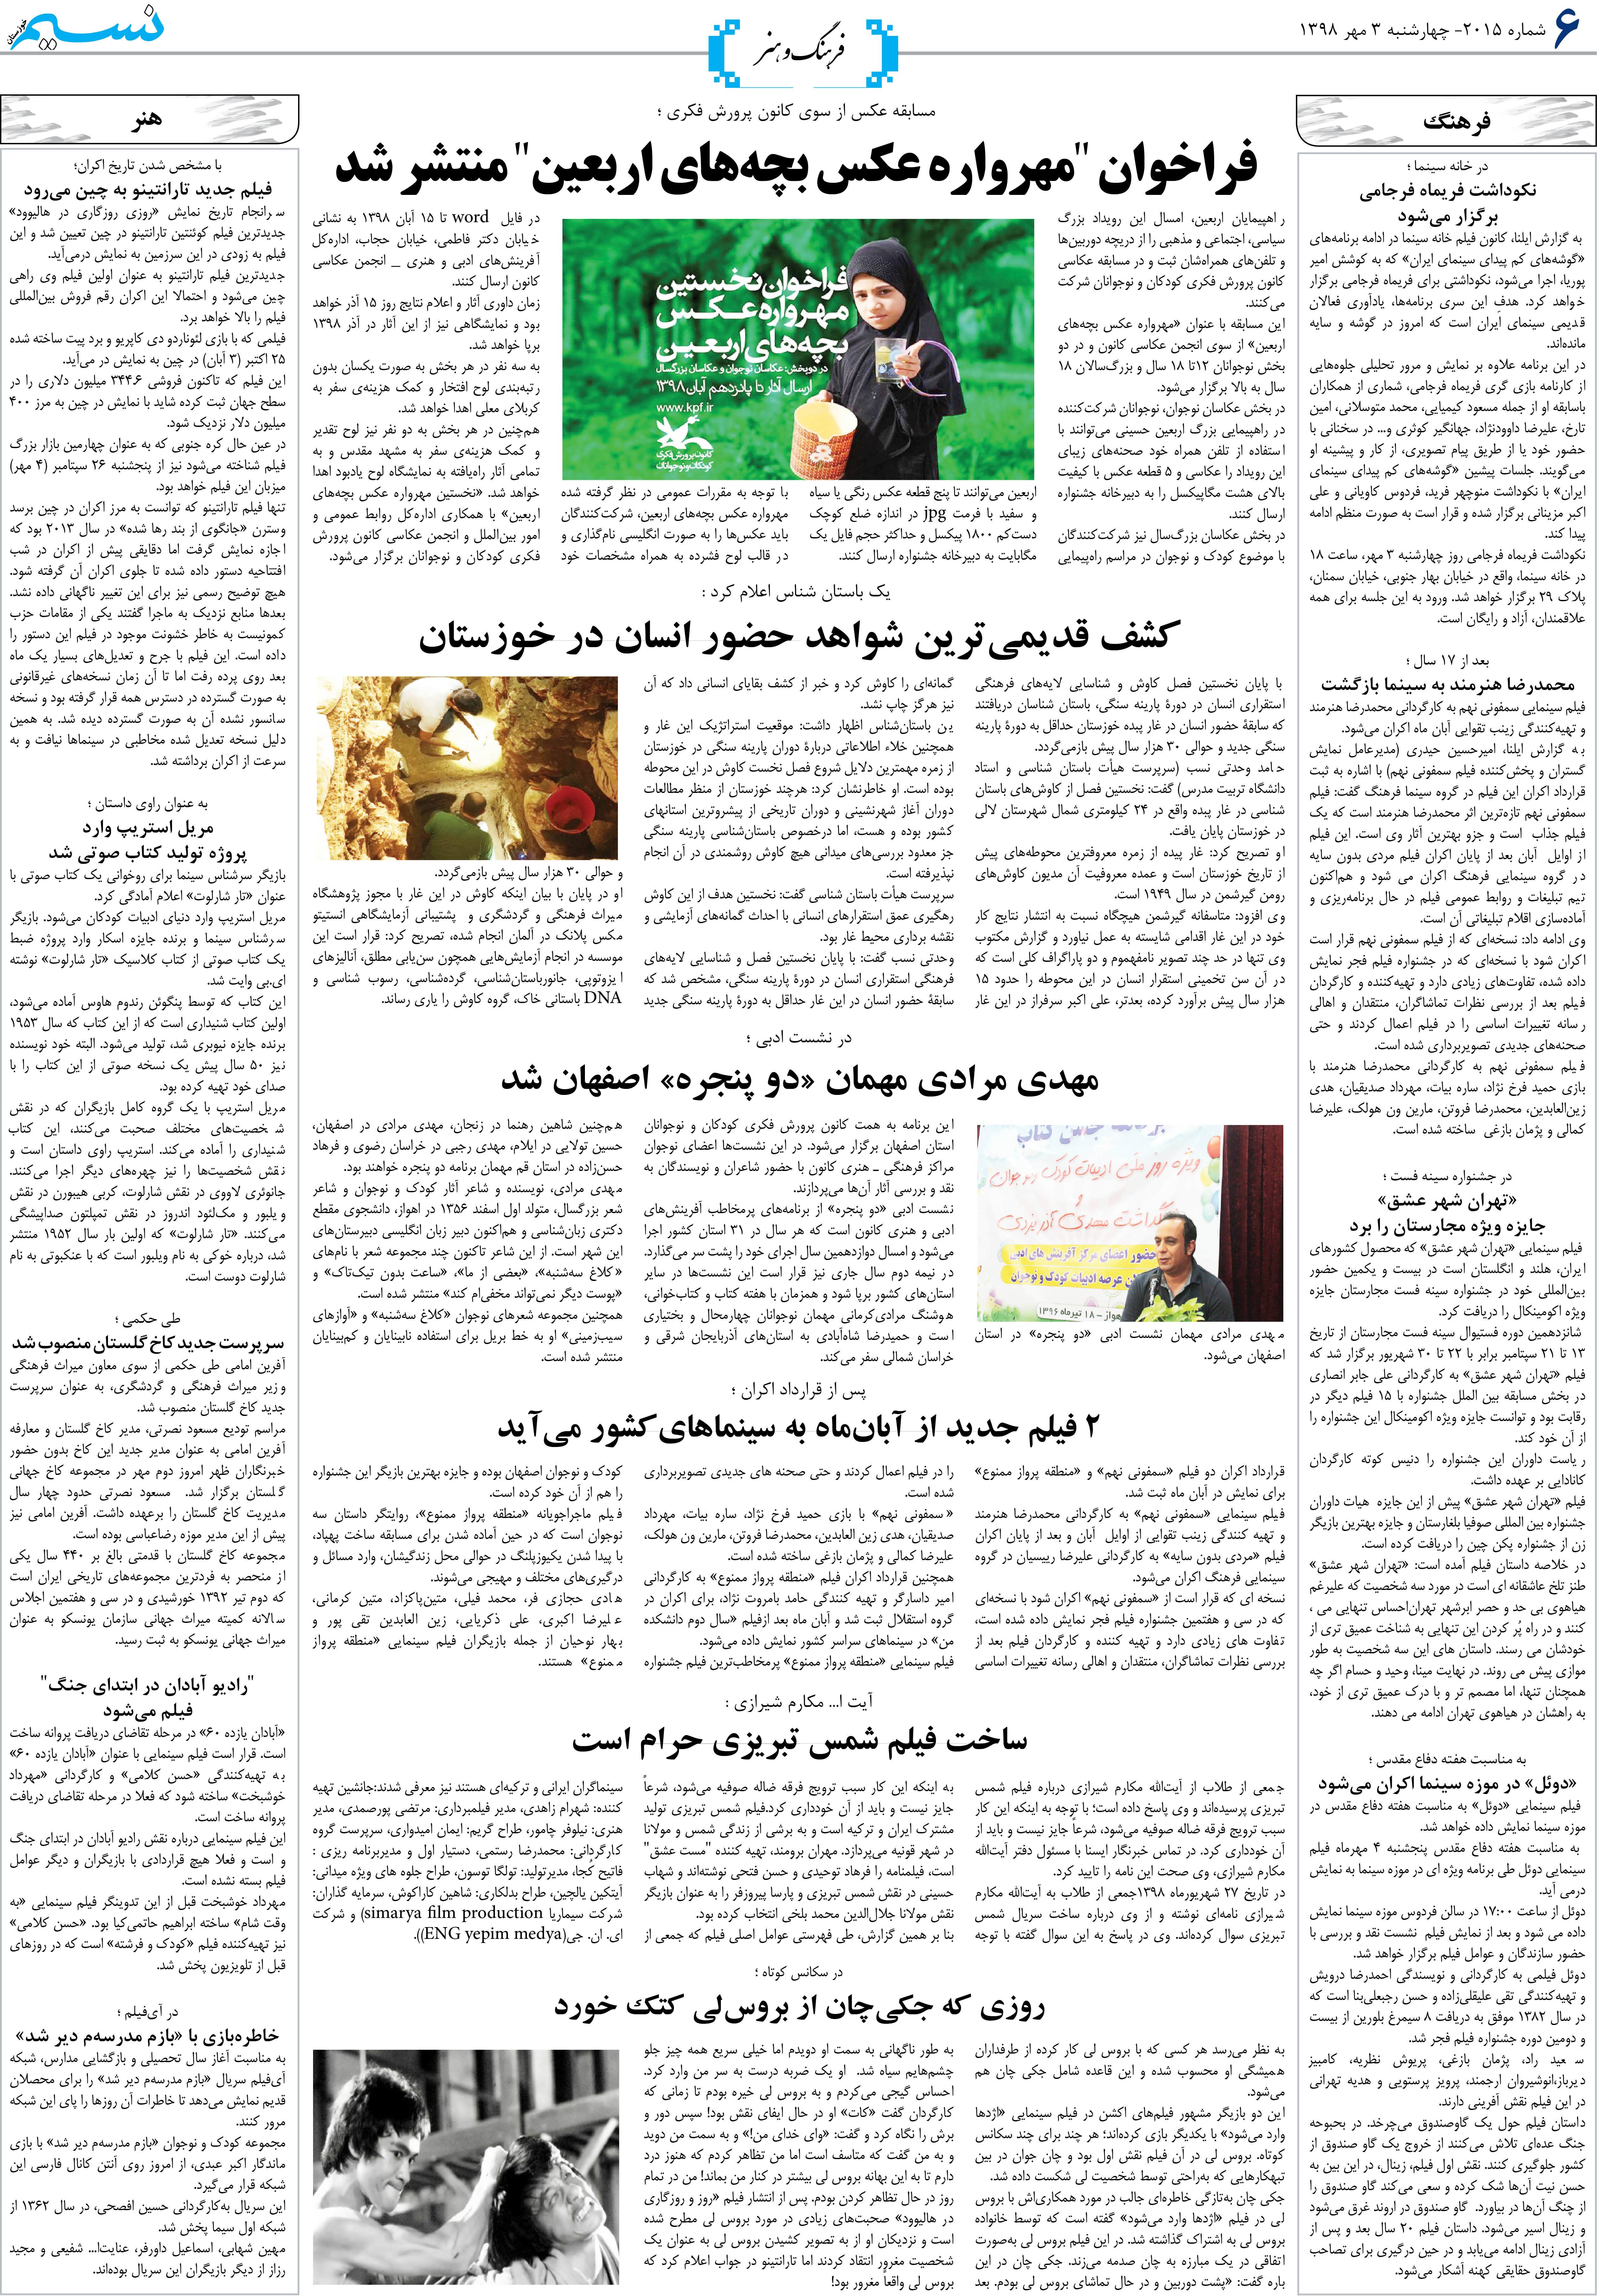 صفحه فرهنگ و هنر روزنامه نسیم شماره 2015